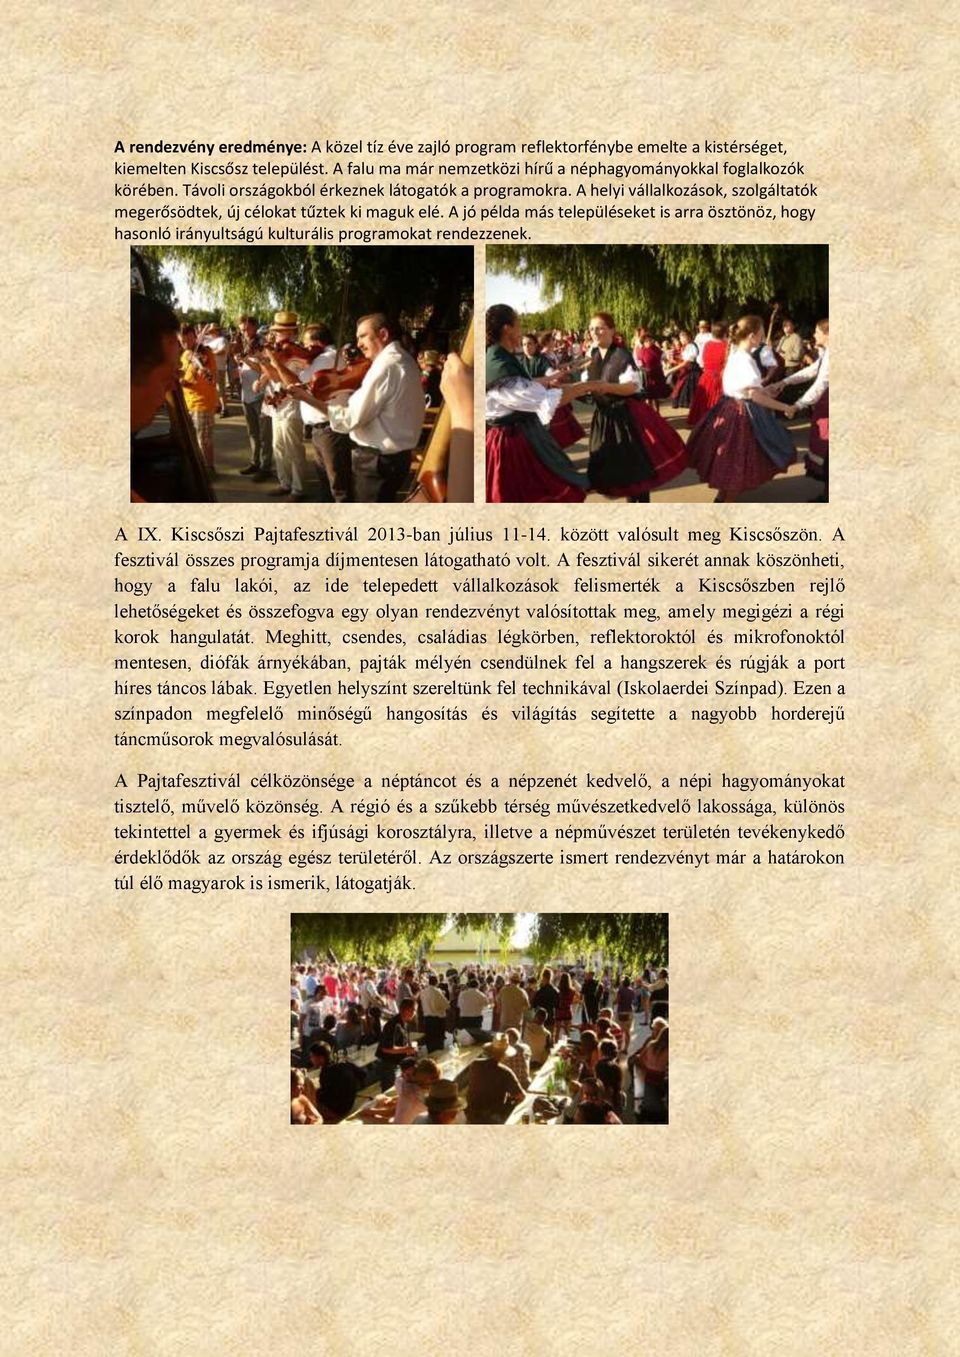 A jó példa más településeket is arra ösztönöz, hogy hasonló irányultságú kulturális programokat rendezzenek. A IX. Kiscsőszi Pajtafesztivál 2013-ban július 11-14. között valósult meg Kiscsőszön.